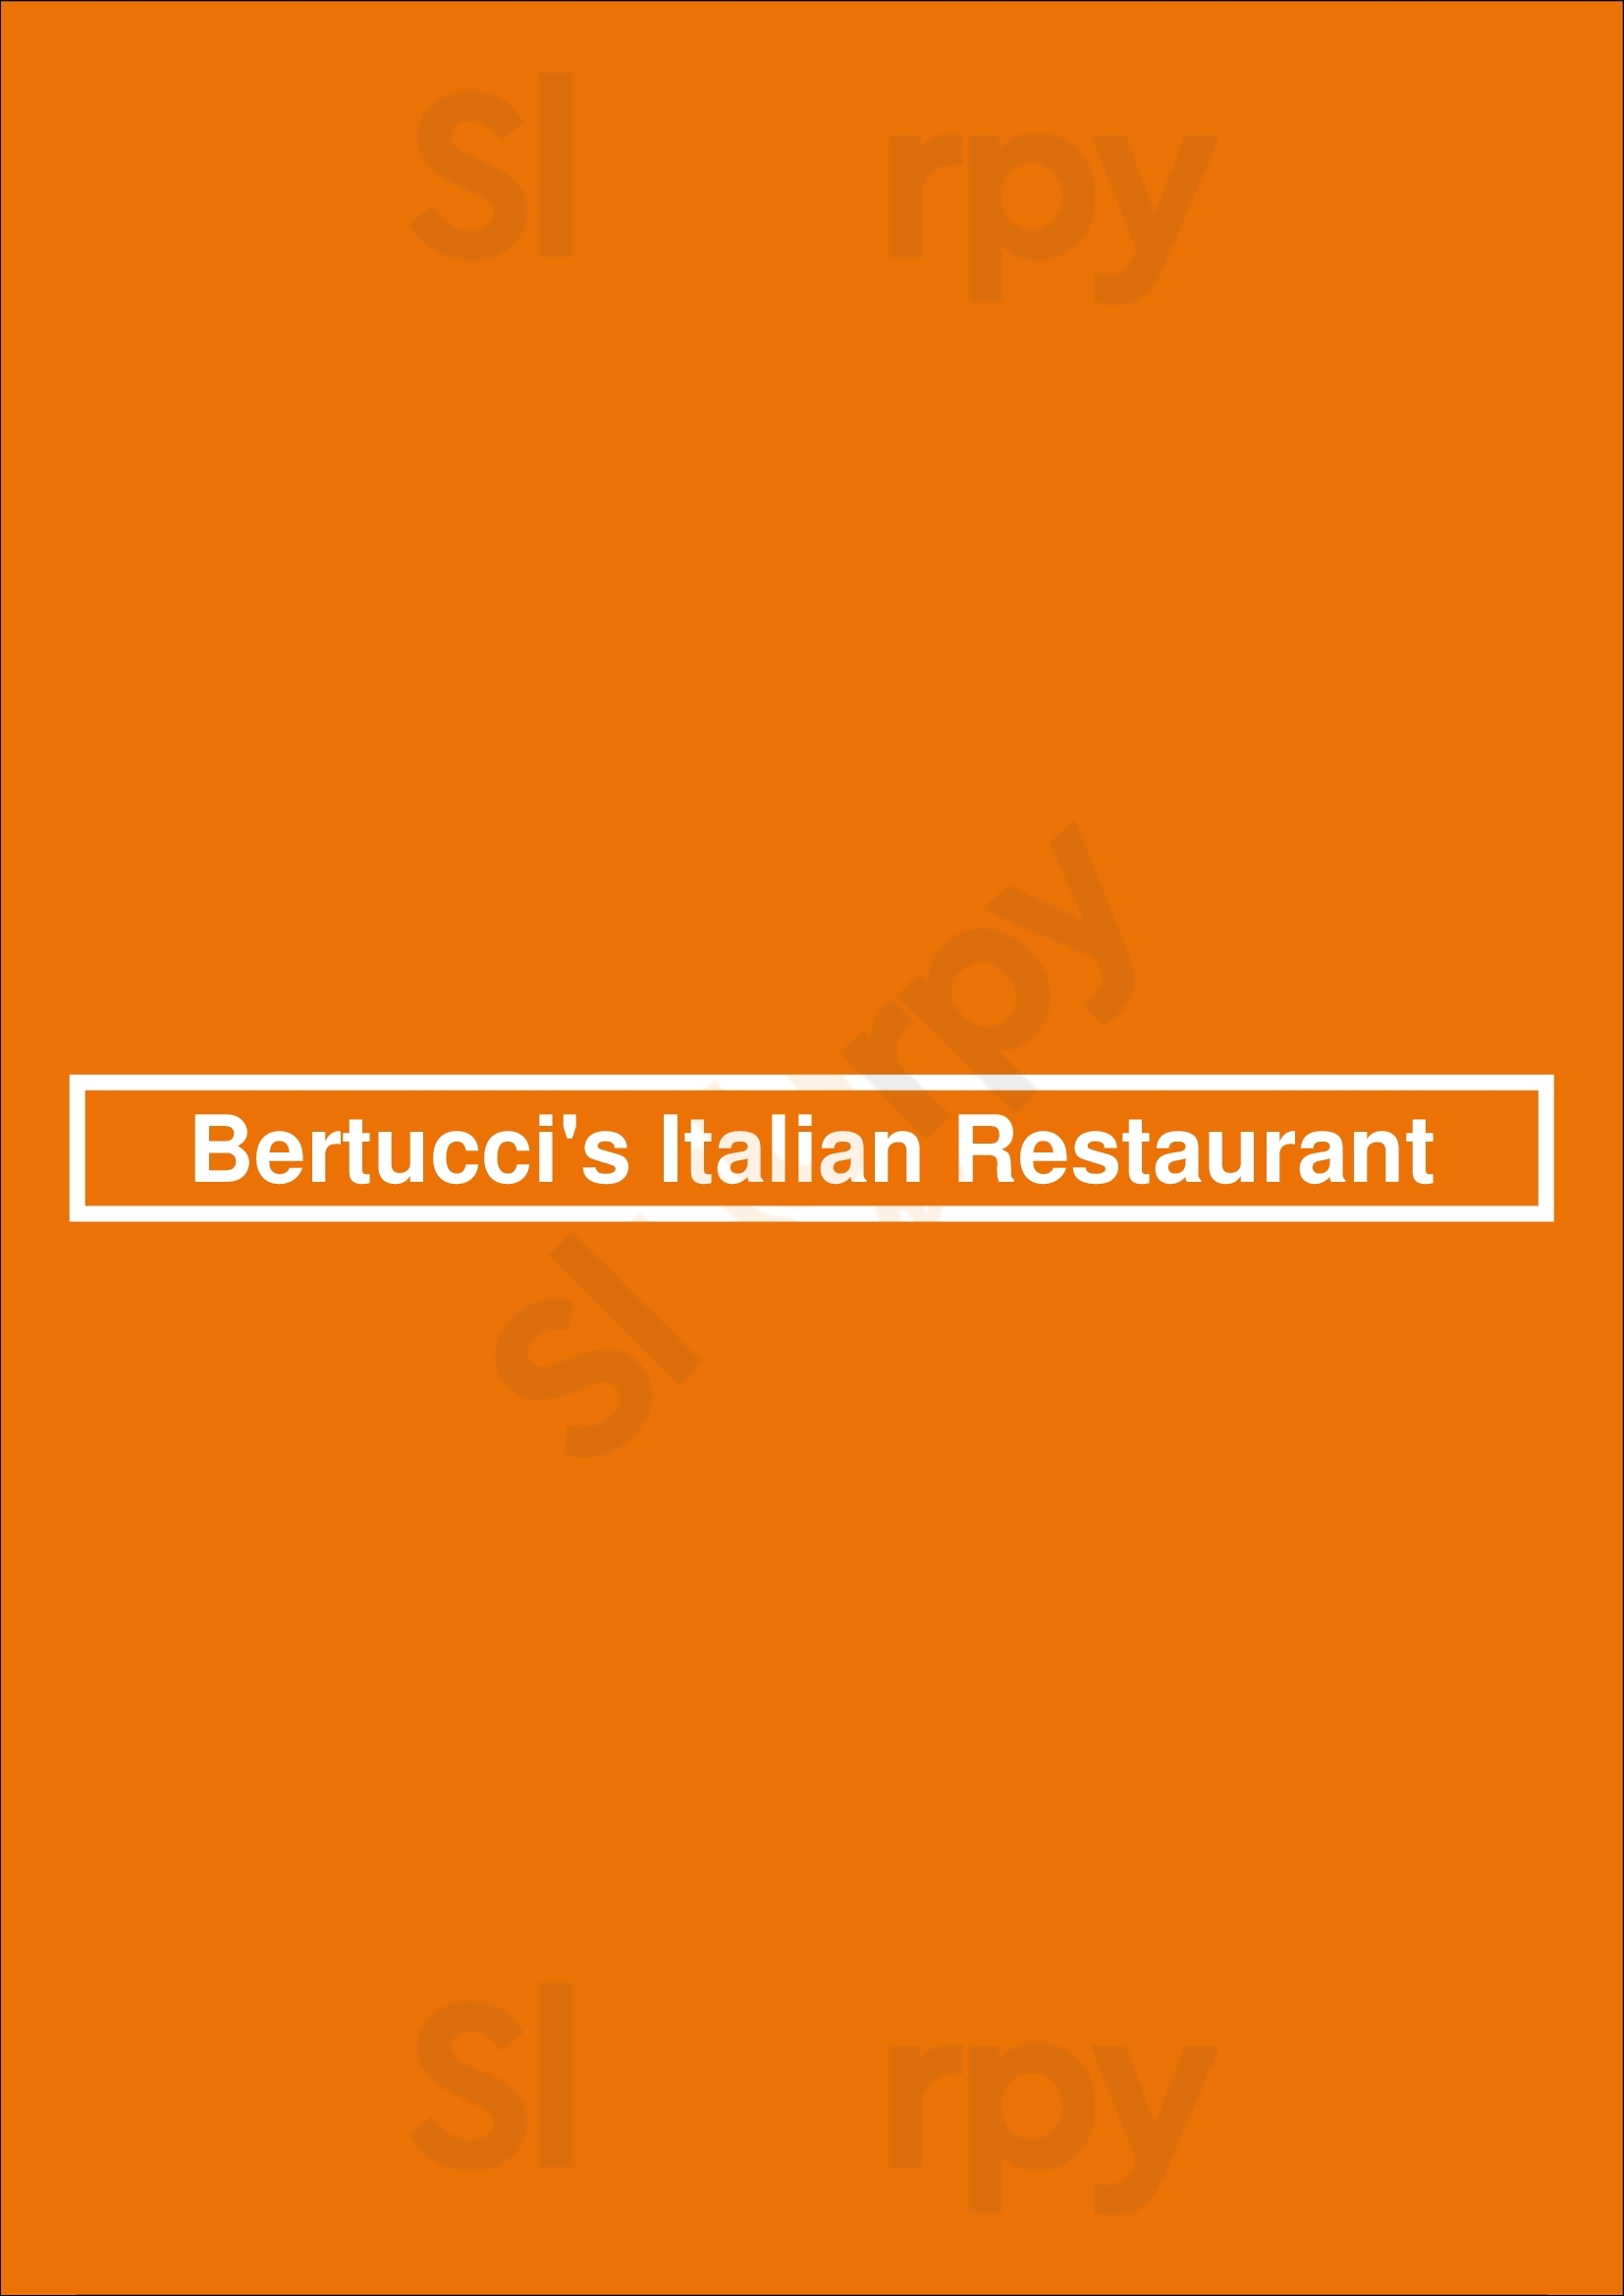 Bertucci's Italian Restaurant Lexington Menu - 1